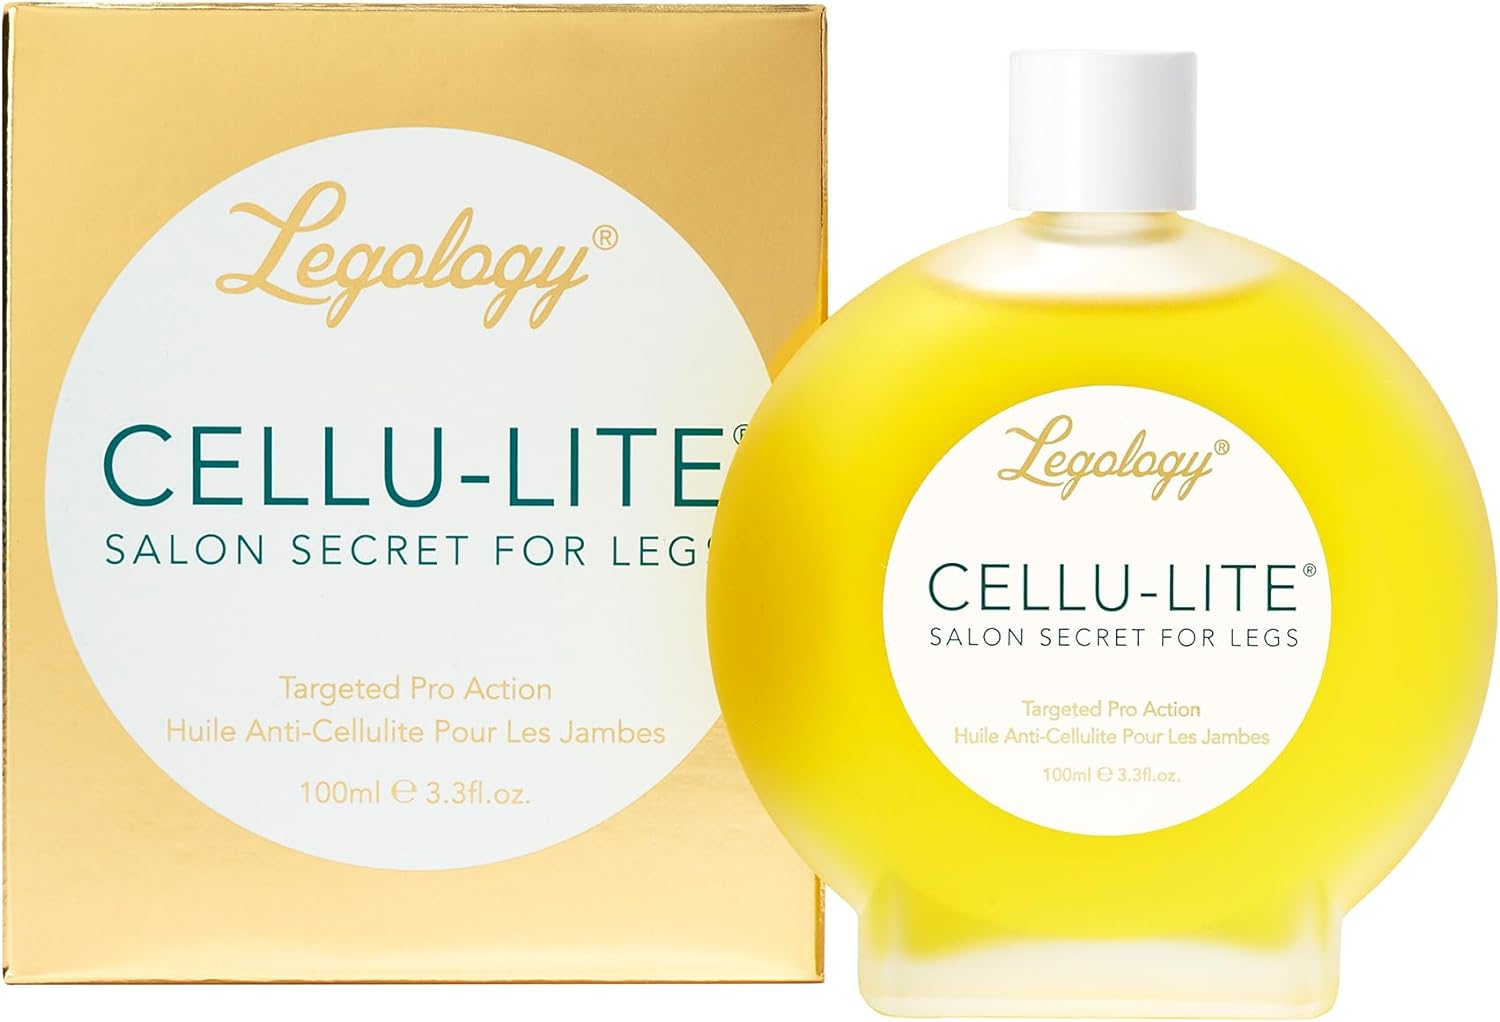 
Légologie Cellulite Aromathérapie Huile de Massage, Salon Secret pour les jambes, 100 ml